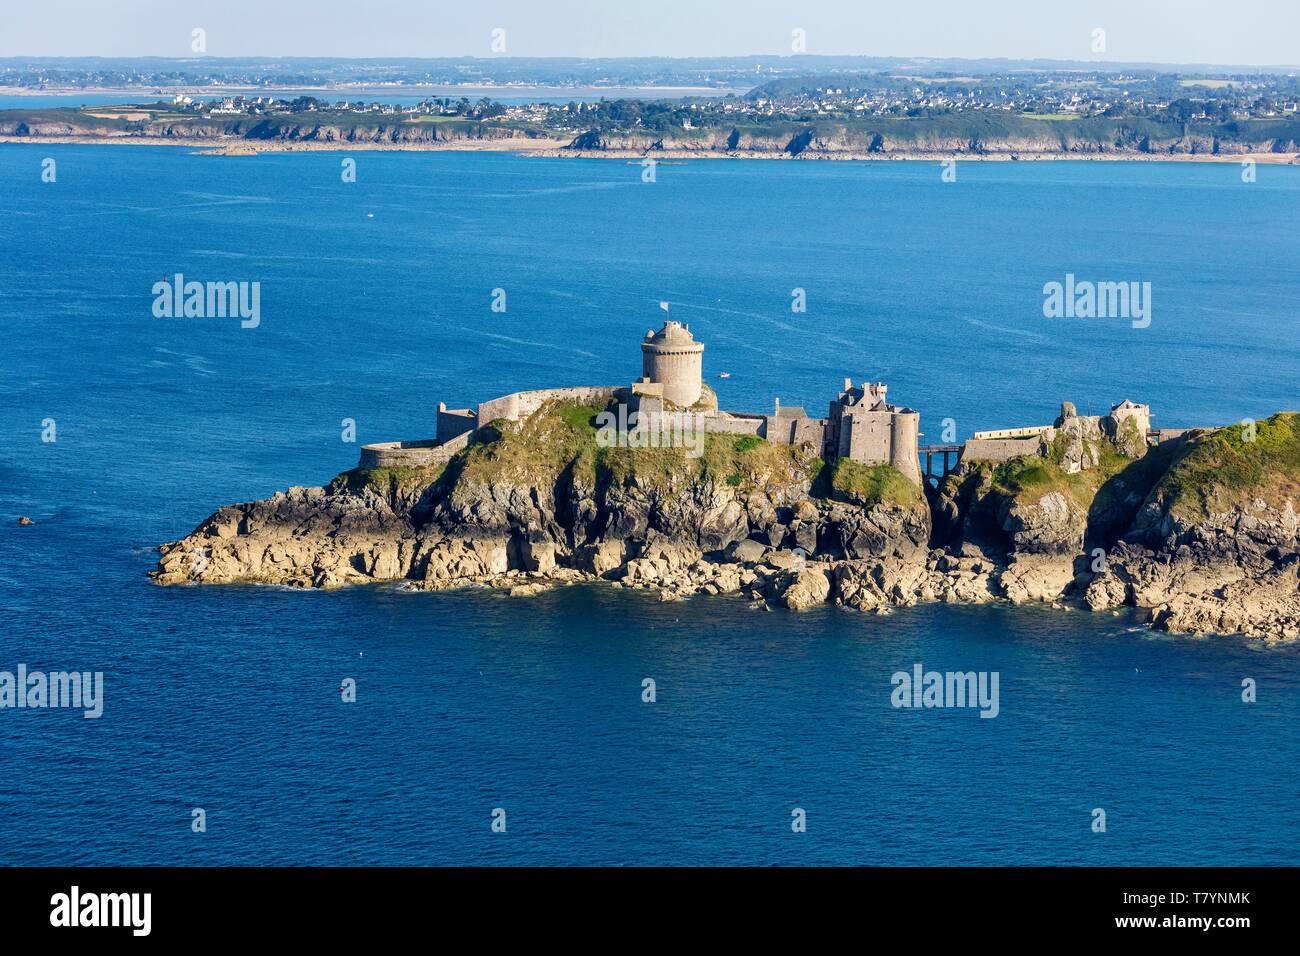 France, Cotes d'Armor, Plevenon, Fort la Latte, château fort sur la pointe de la Latte (vue aérienne) Banque D'Images